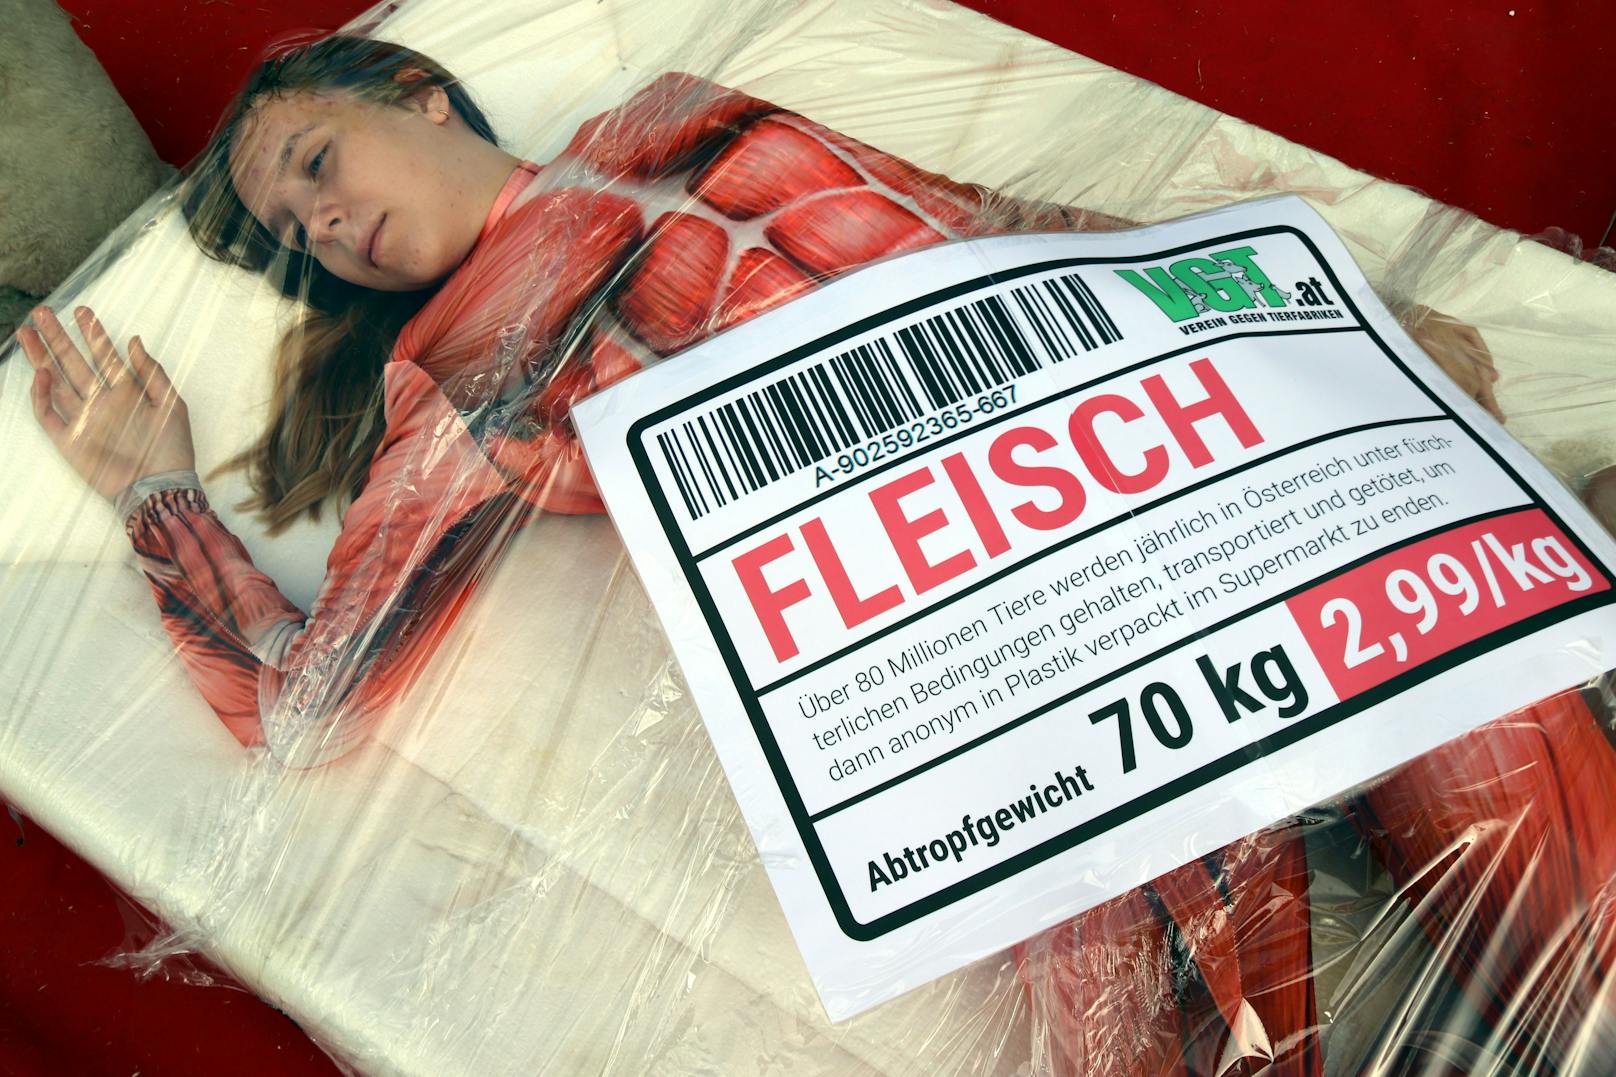 Vier Aktivisten des Vereins gegen Tierfabriken (VGT) sorgten mit einer besonderen Aktion für Aufsehen. Die Tierschützer appellieren, den Fleischkonsum einzuschränken.